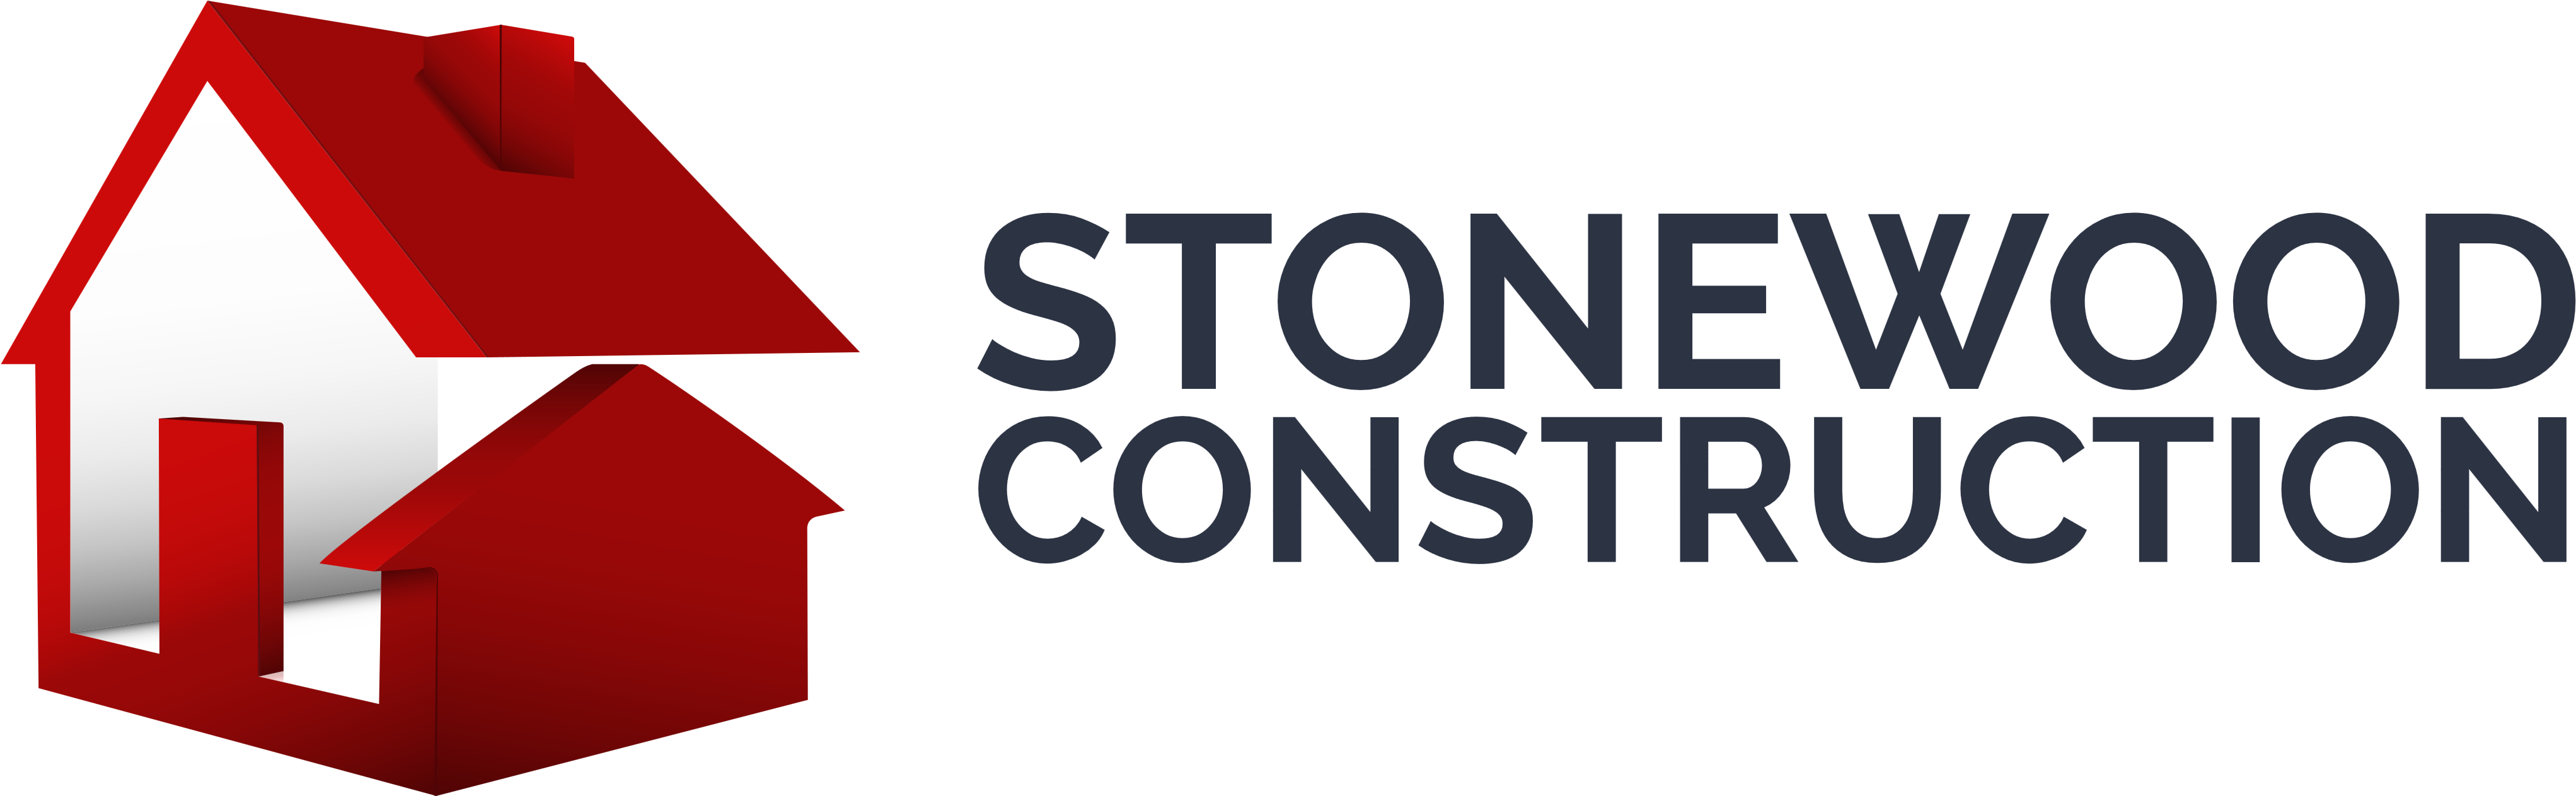 Stonewood Construction &ndash Logos Download - Stonewood Construction Clipart (4100x1262), Png Download